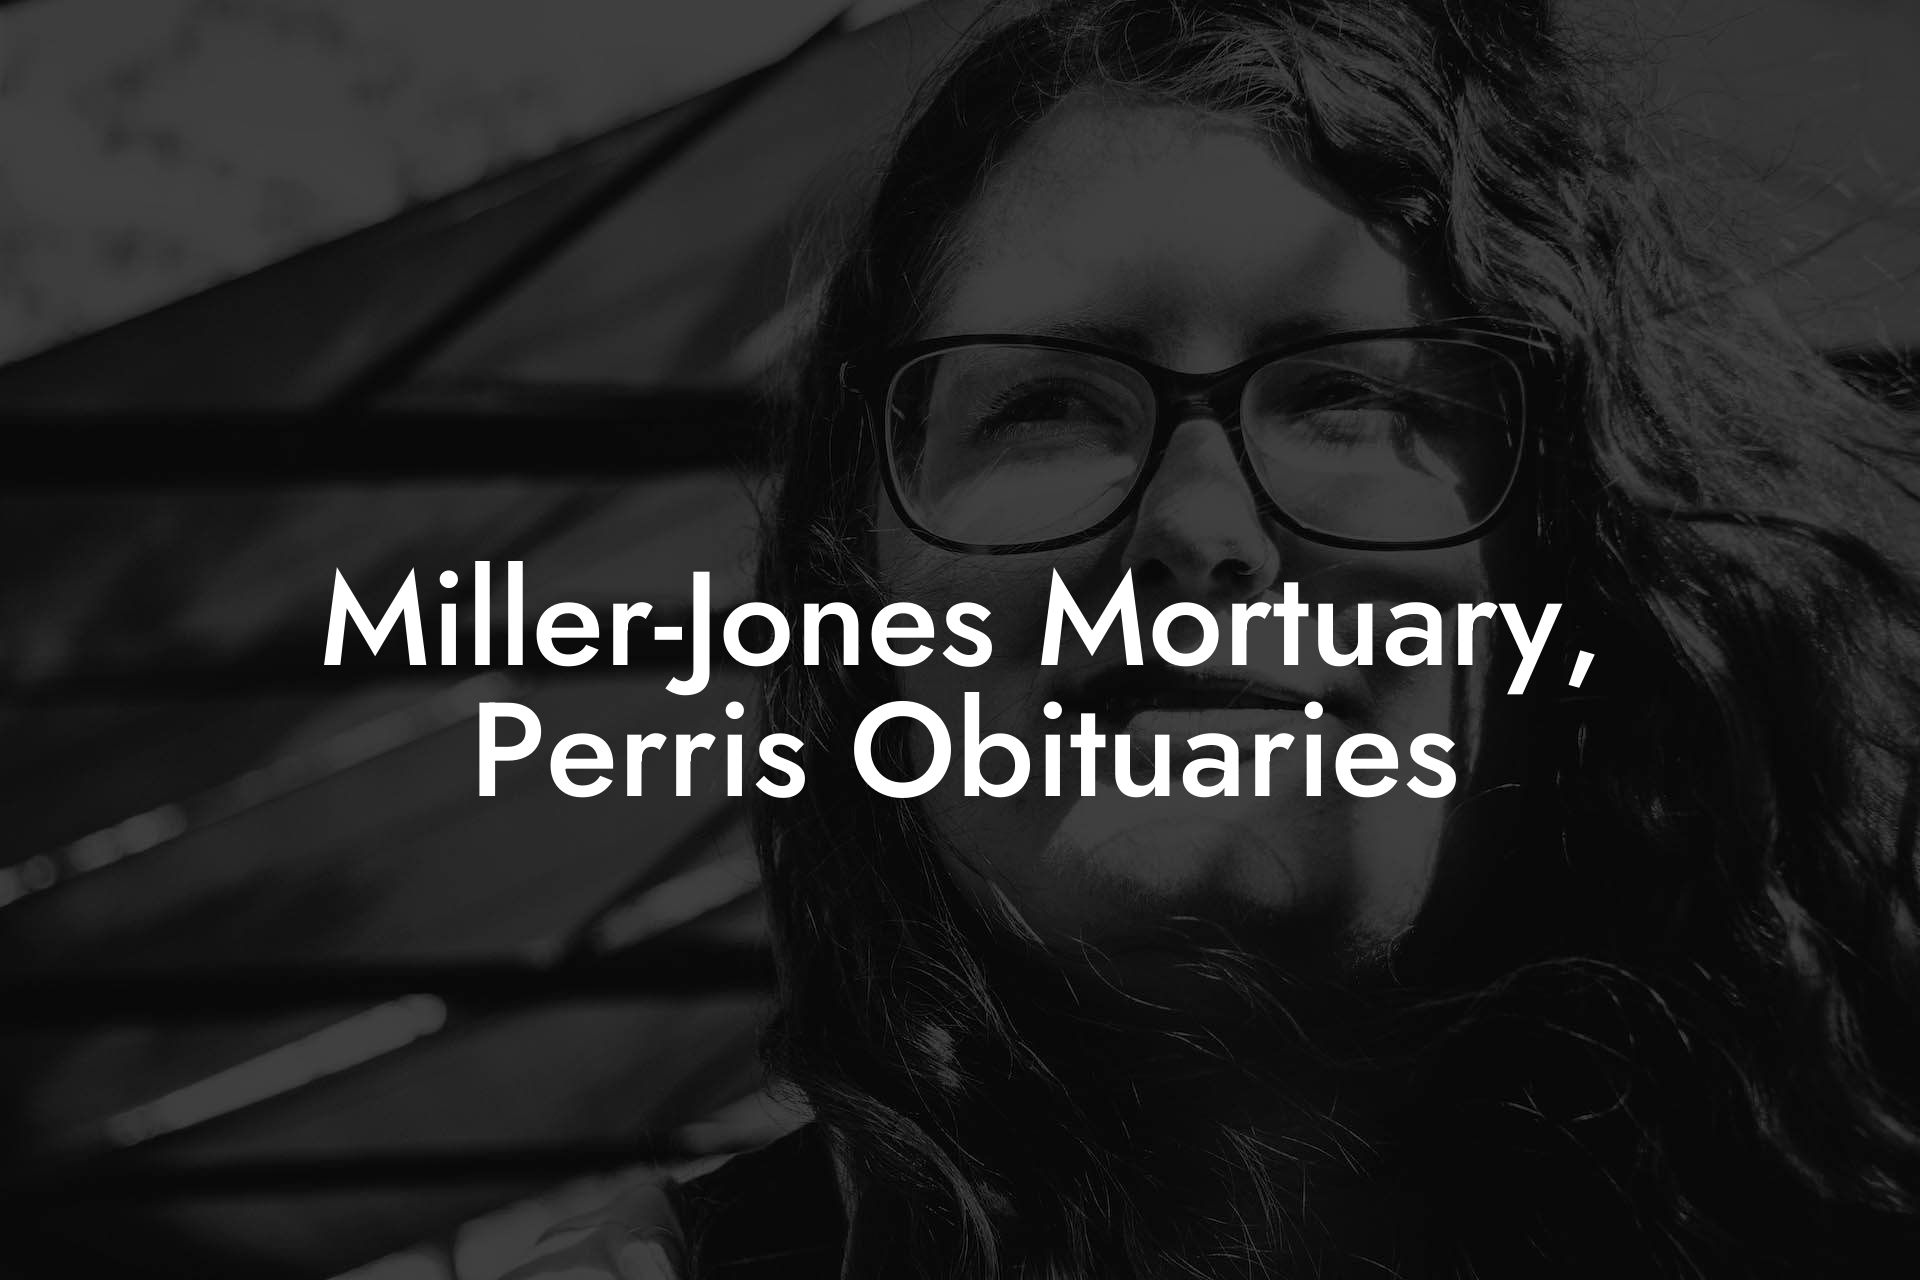 Miller-Jones Mortuary, Perris Obituaries